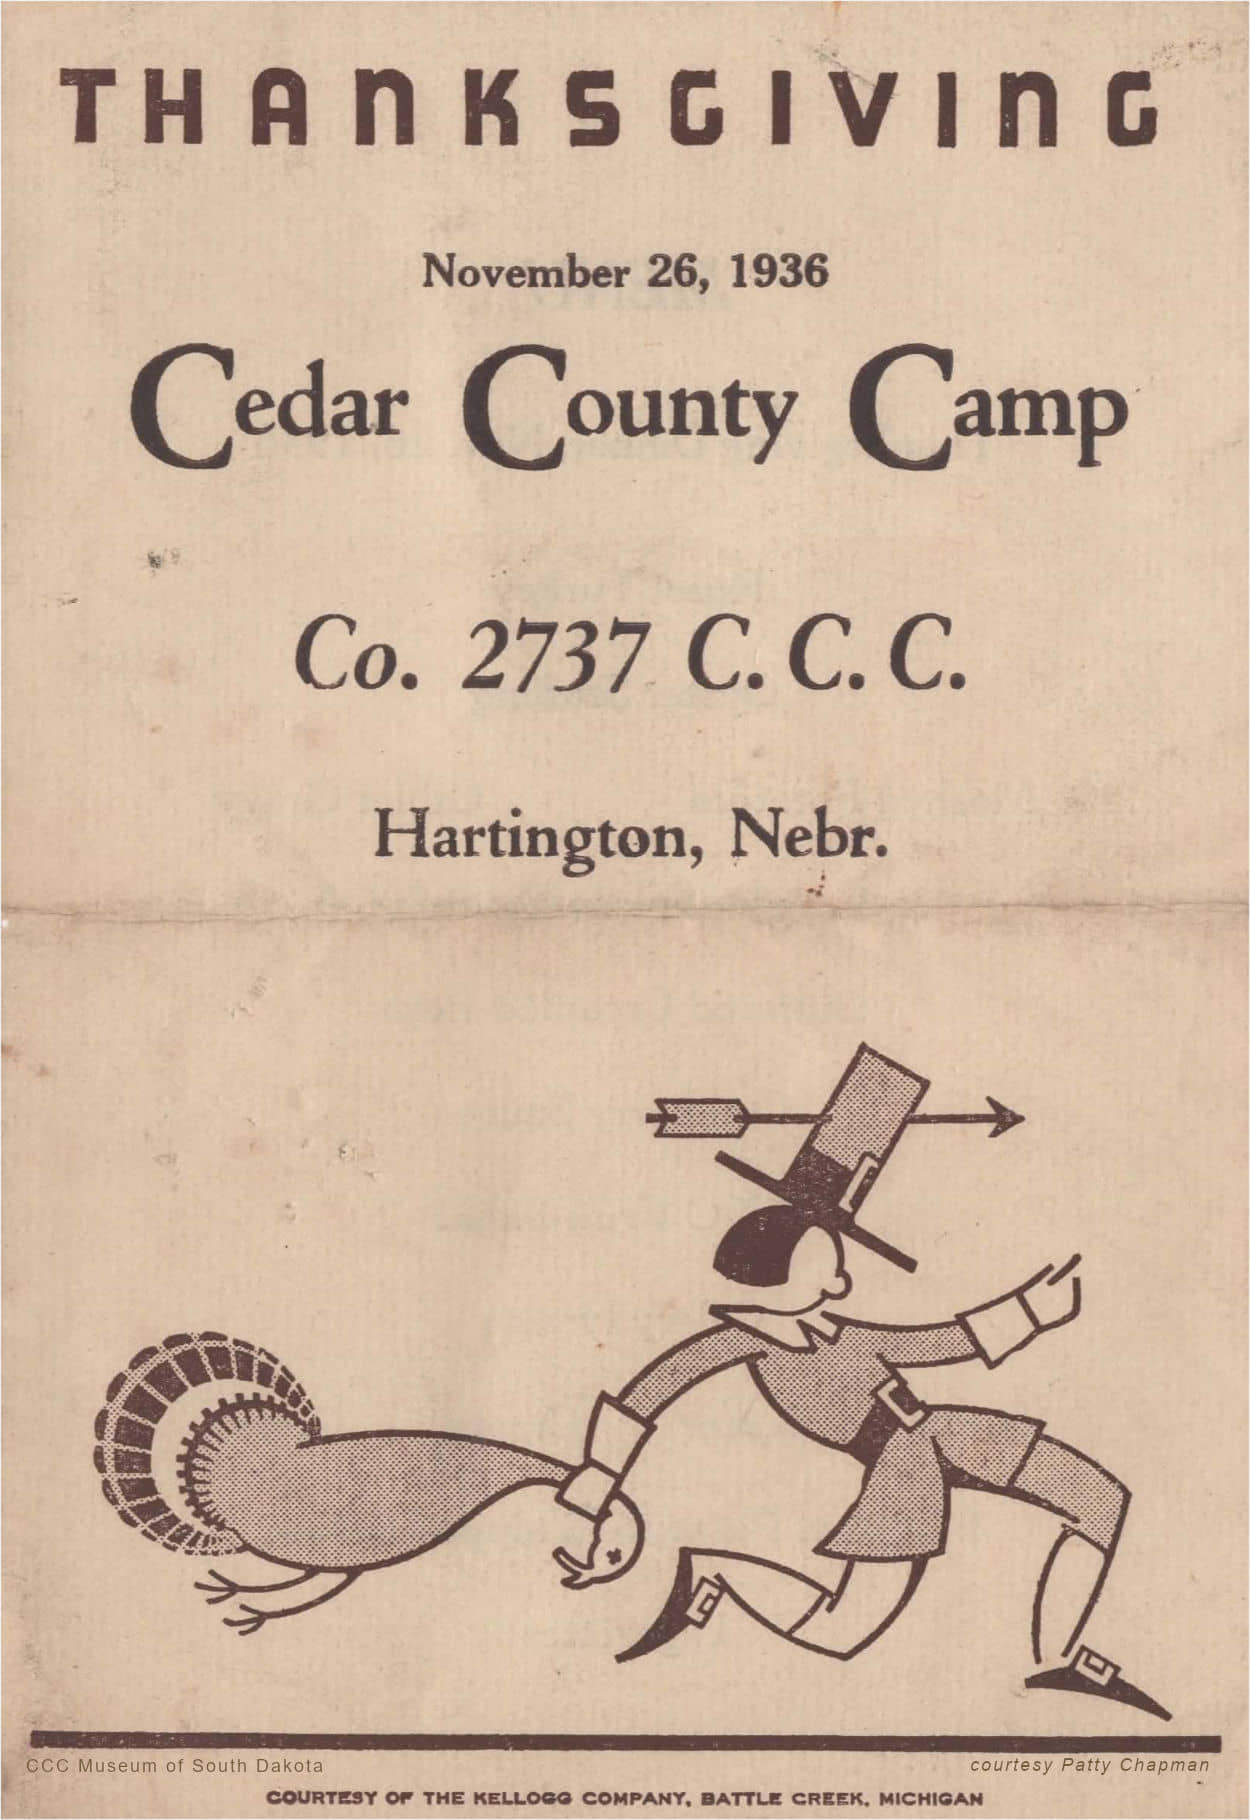 Cedar County Camp Thanksgiving 1936